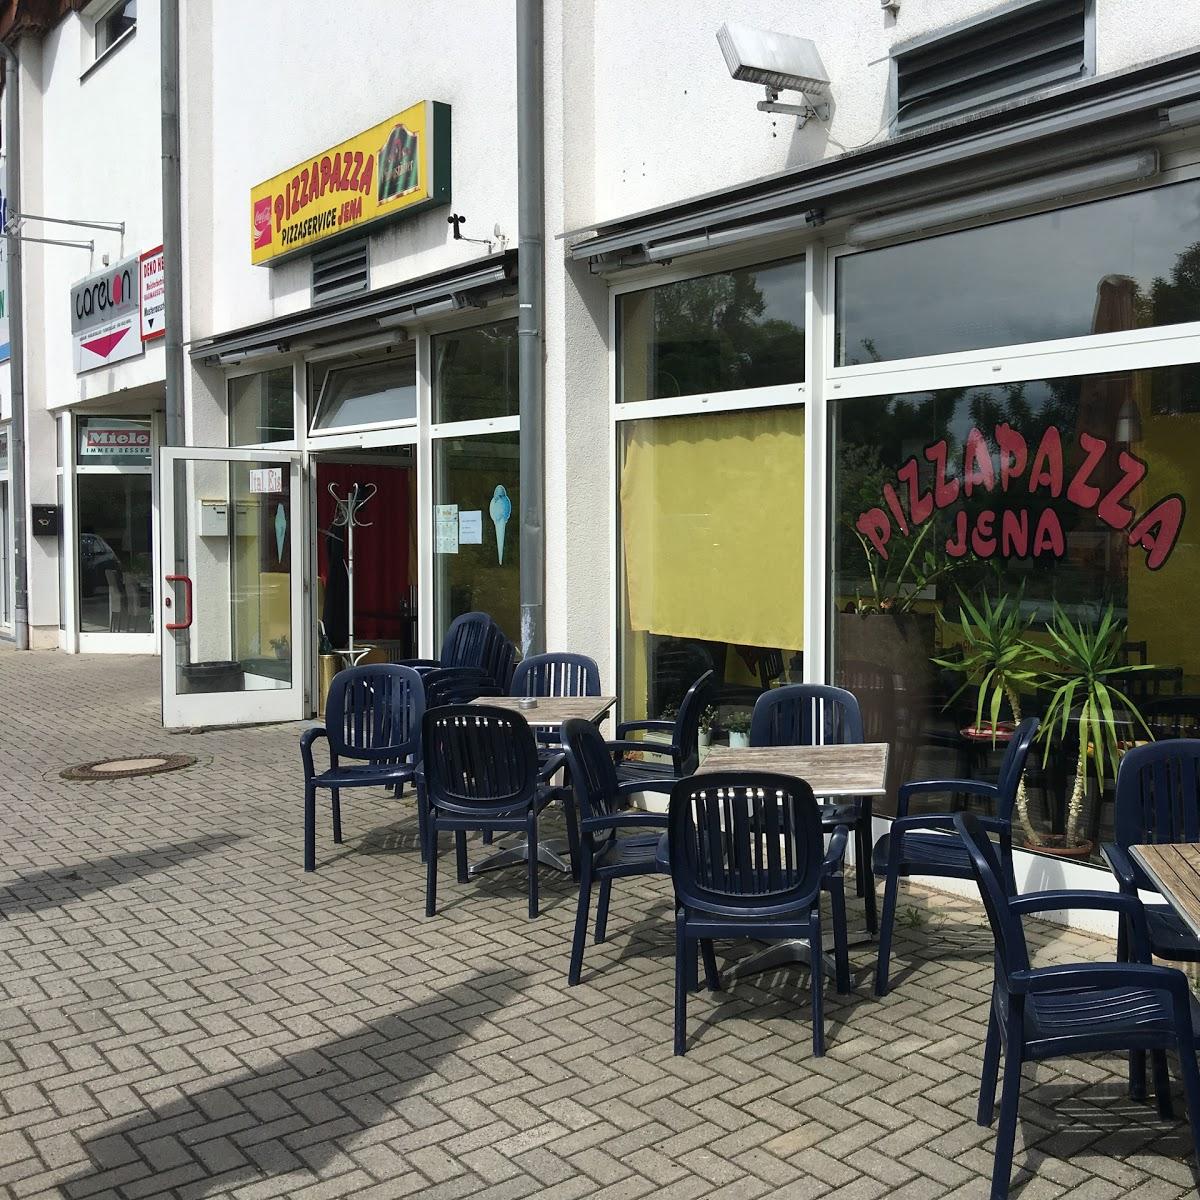 Restaurant "Pizza Pazza" in Jena